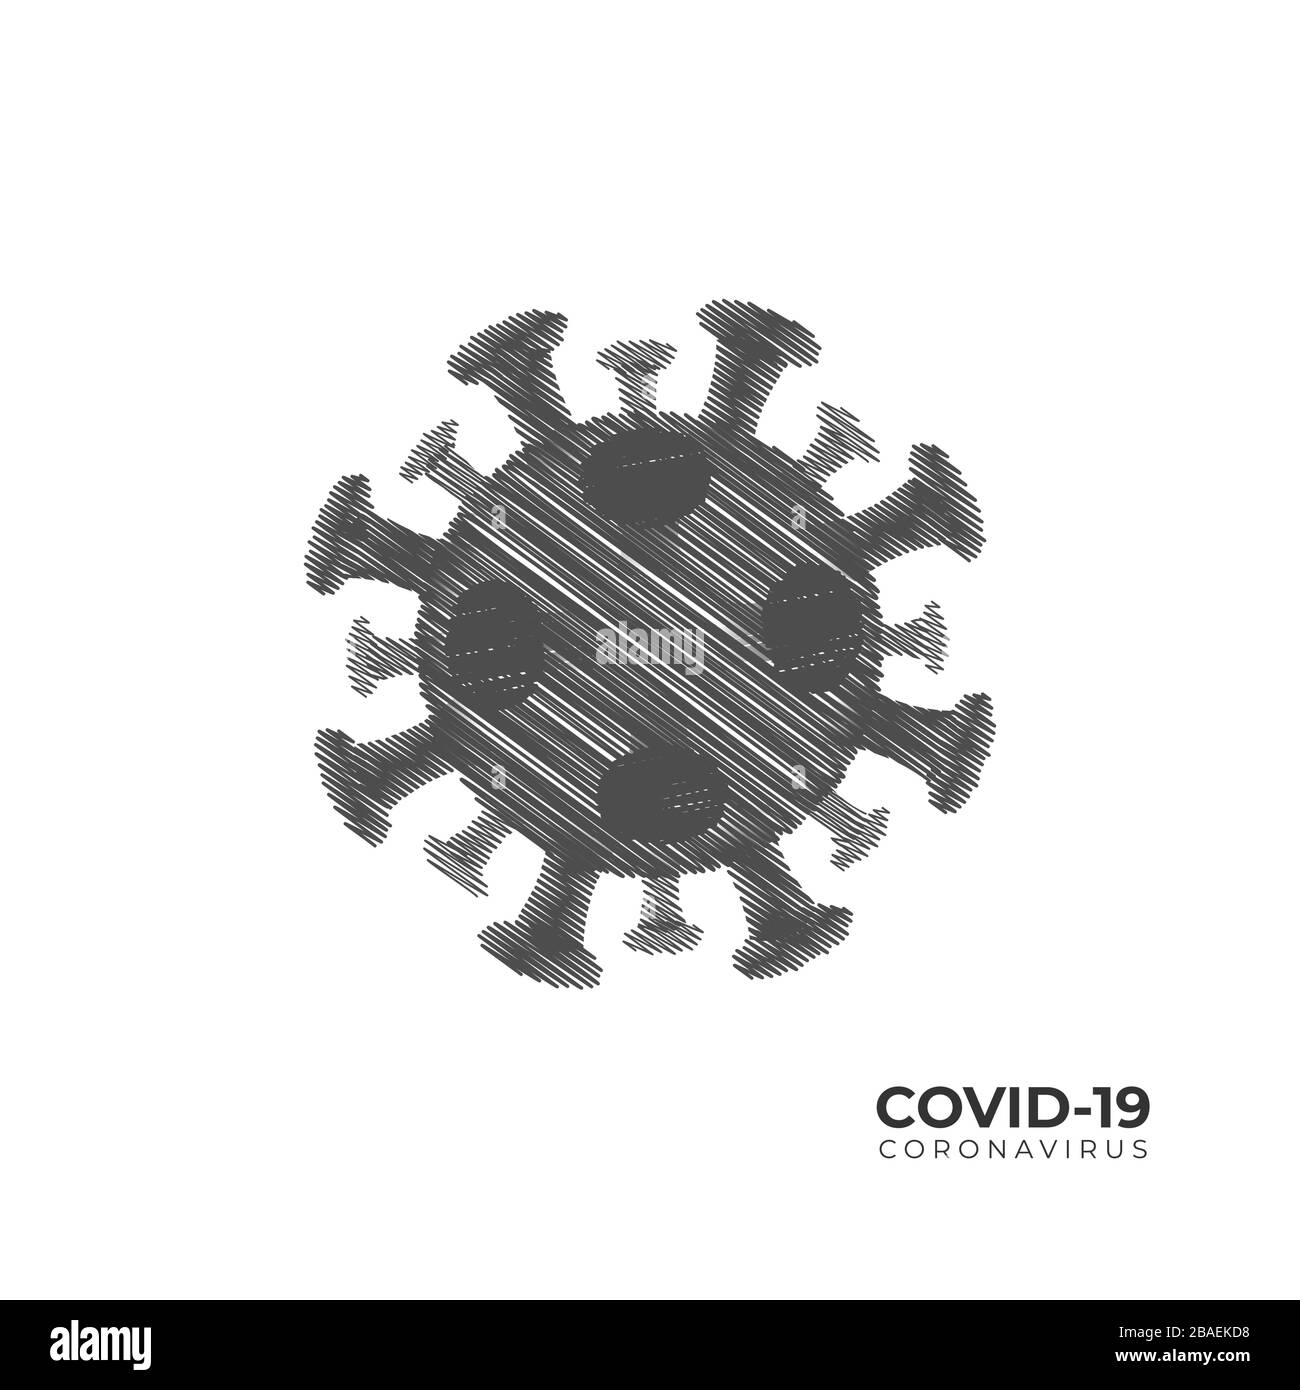 Covid-19 Coronavirus Illustration isoliert auf weißem Hintergrund. Skizzendesign. Logo-Designvorlage. Stock Vektor